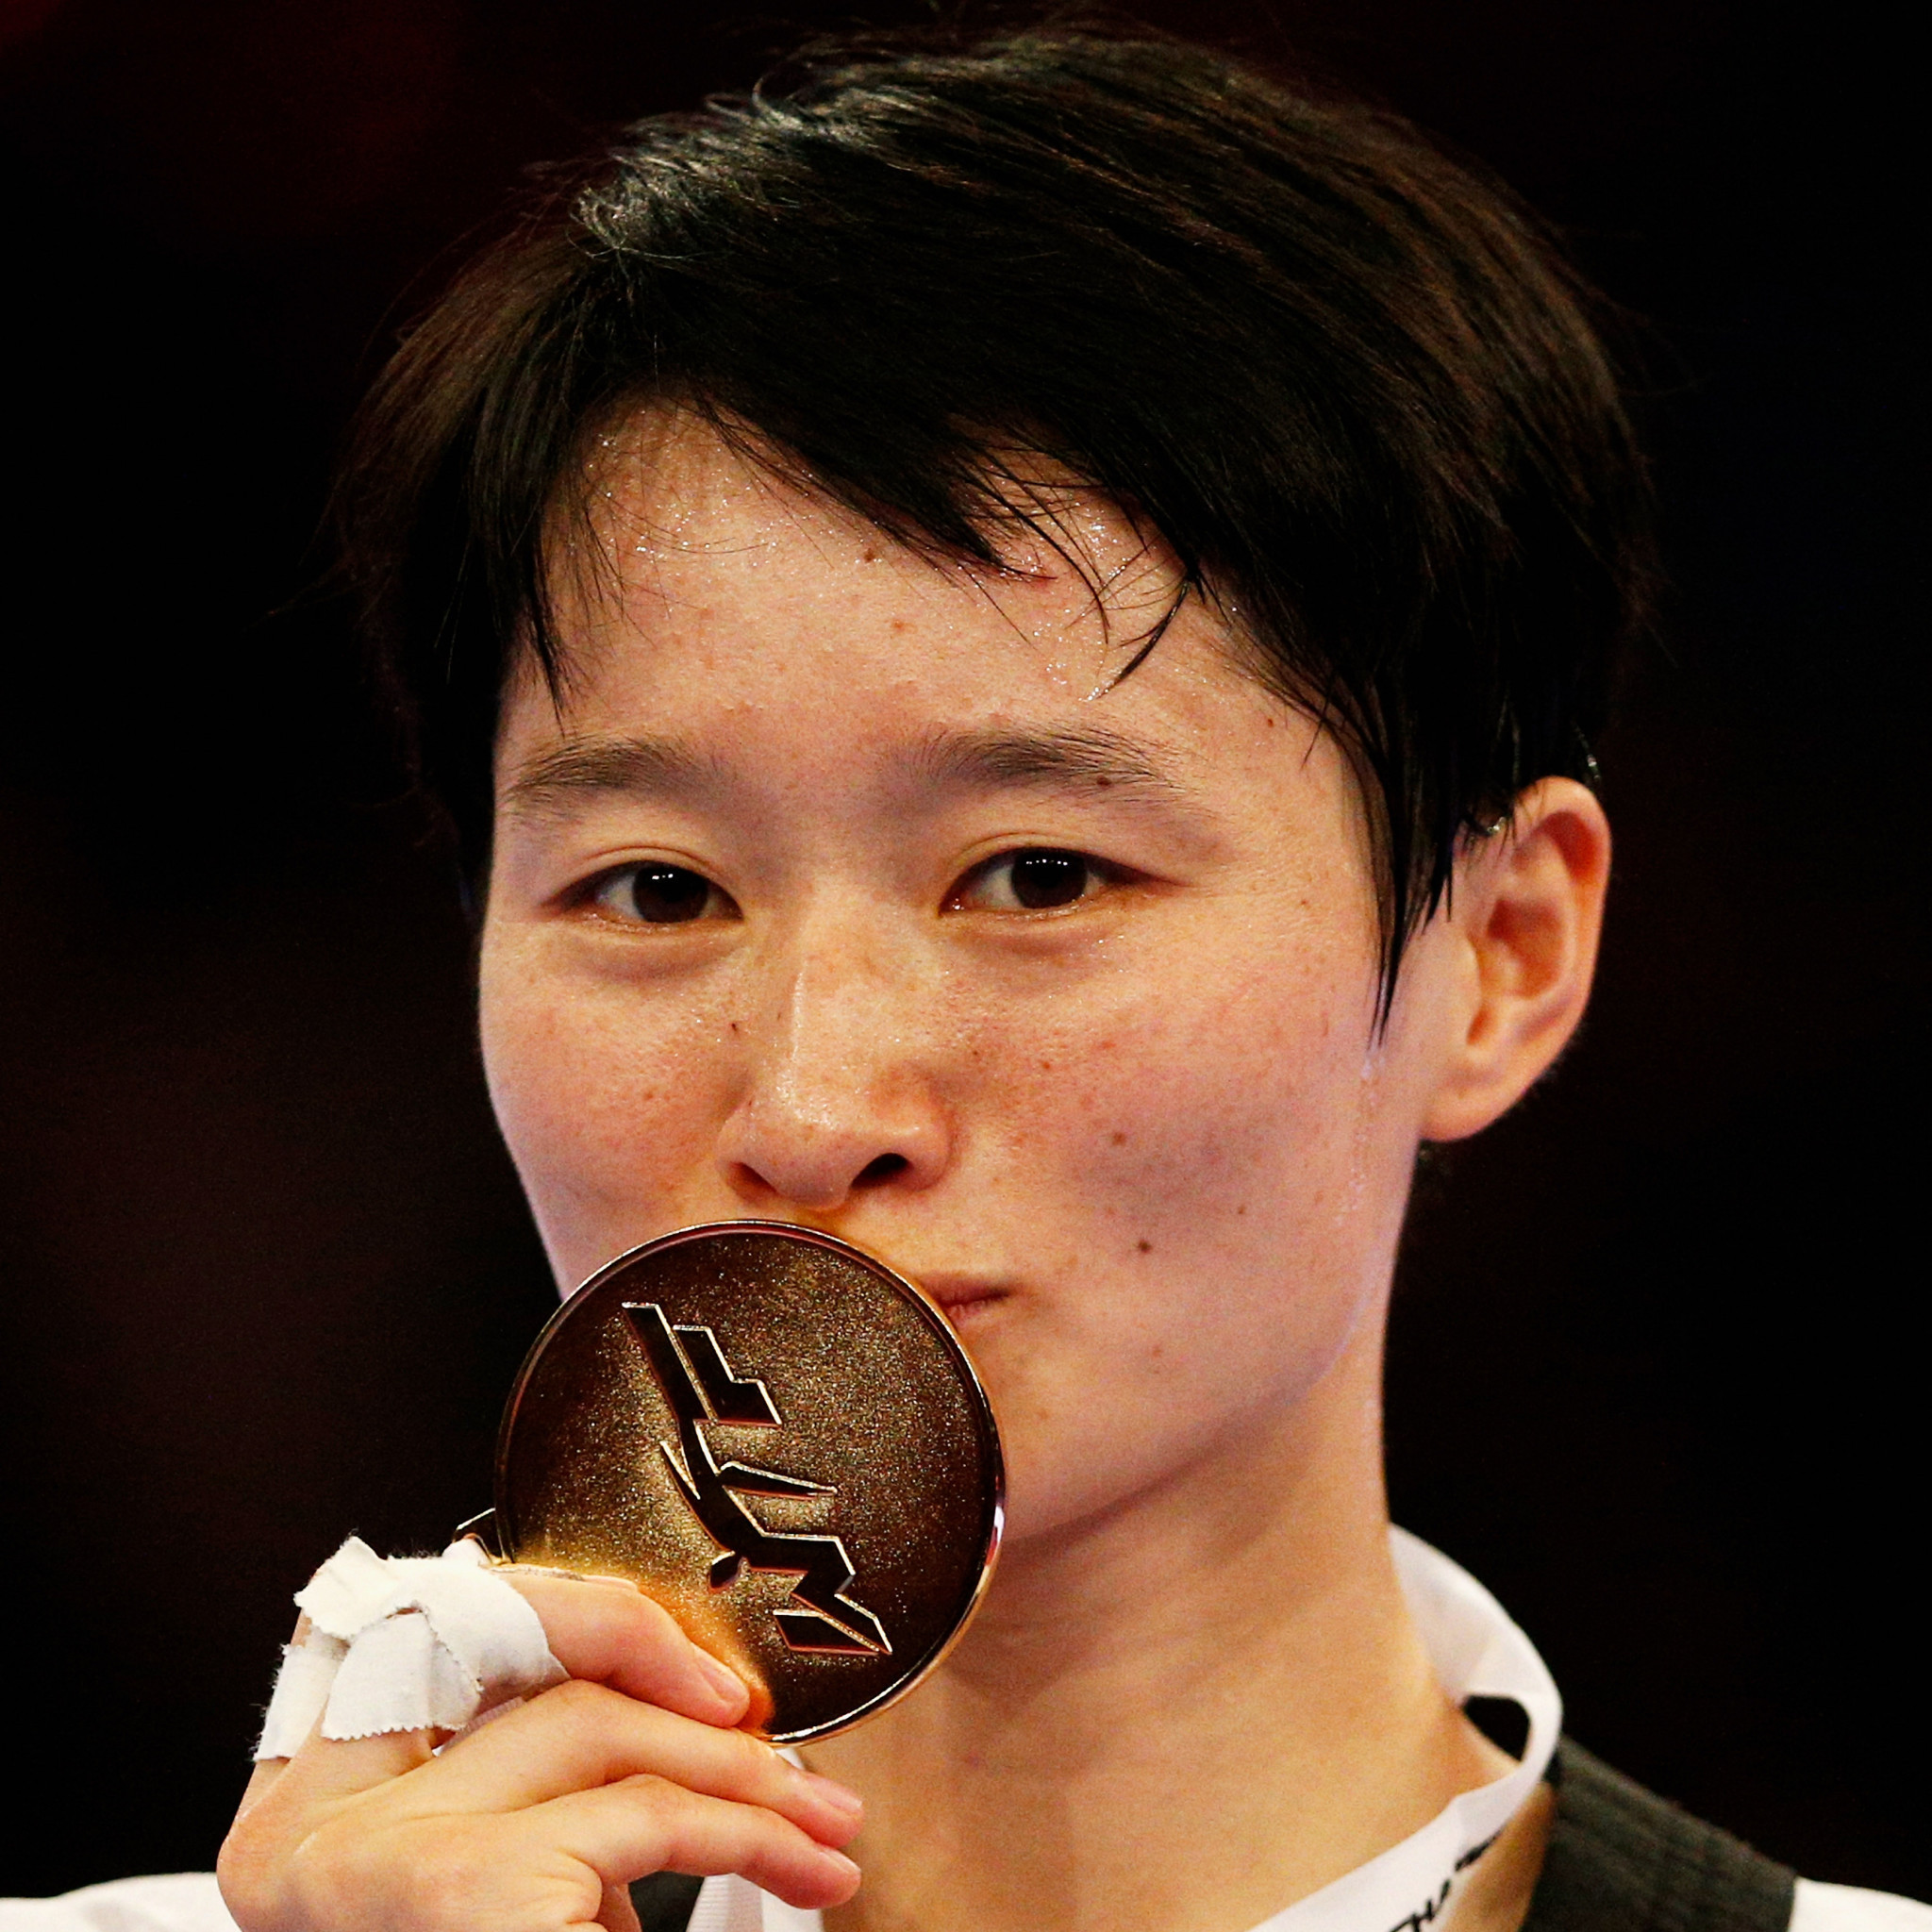 Jingyu Wu - a shot at Olympic history delayed